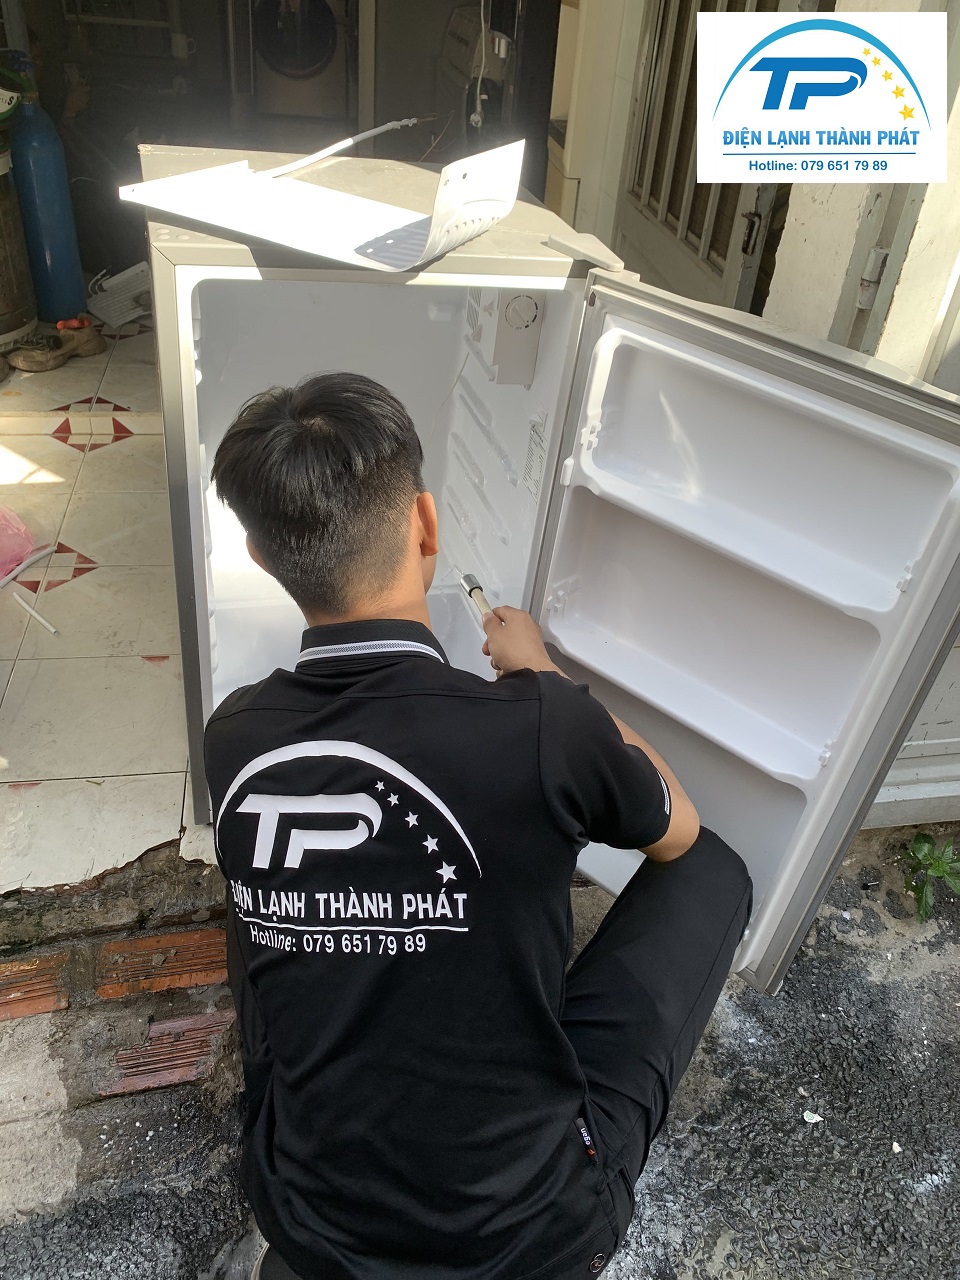 Nhân viên thực hiện thao tác chuyên nghiệp khi sửa tủ lạnh cho khách hàng.